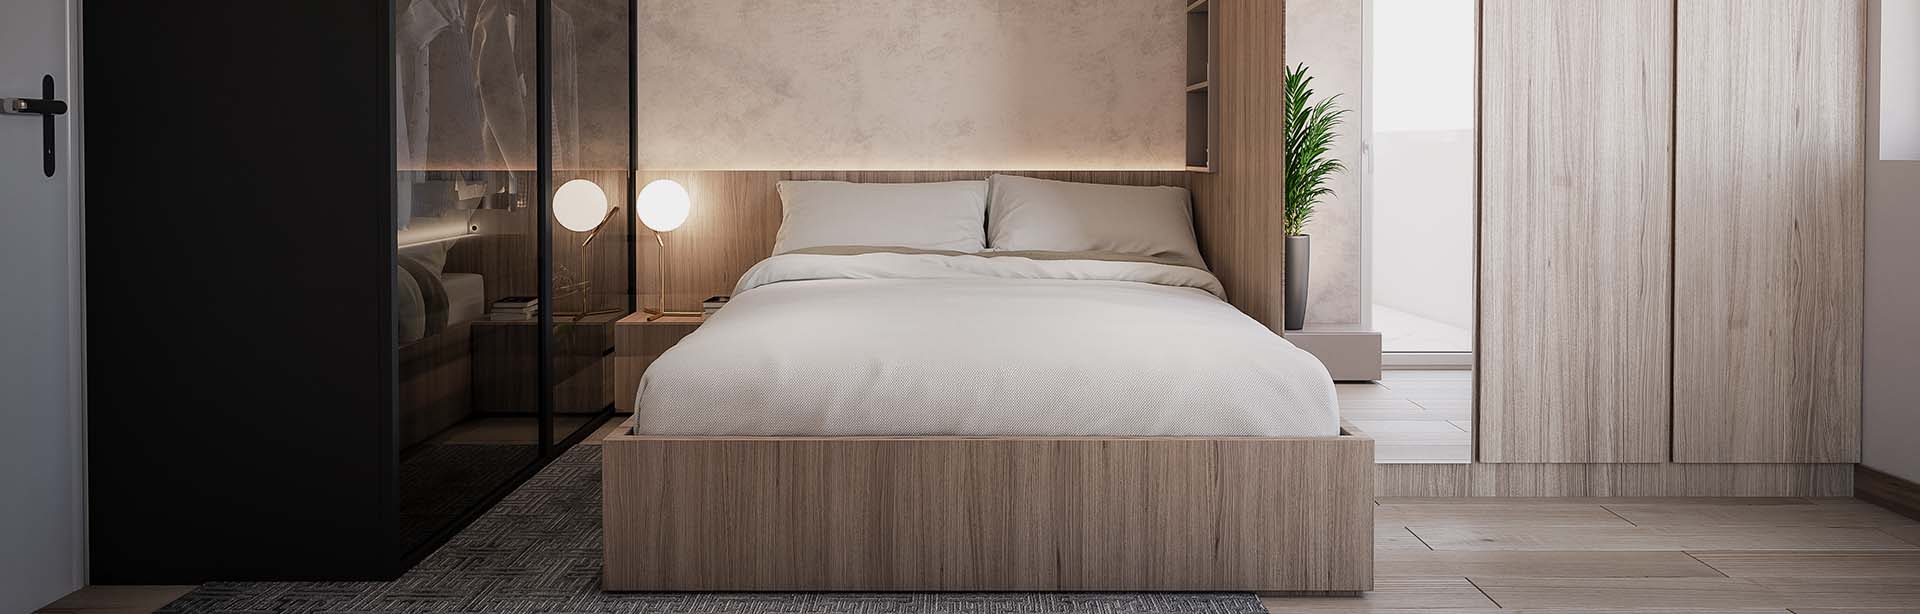 Slajd #2 - sypialnia z dużym drewnianym łóżkiem